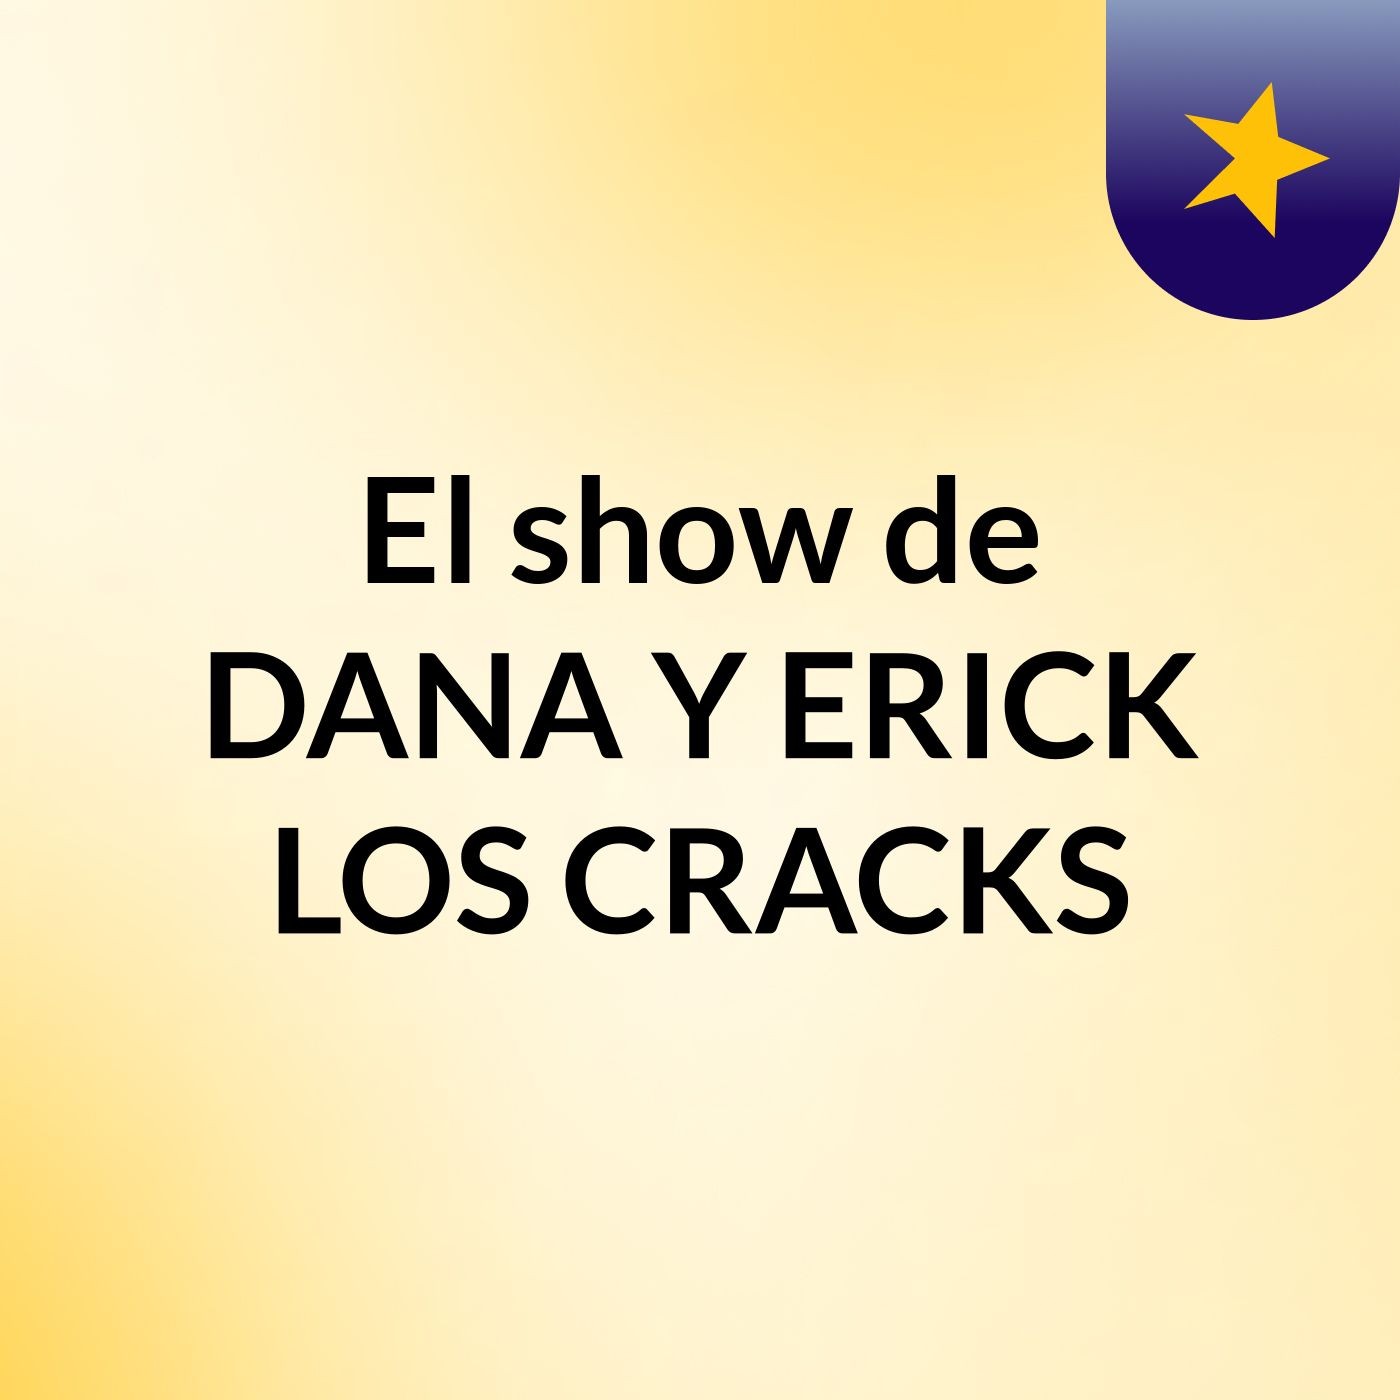 El show de DANA Y ERICK LOS CRACKS